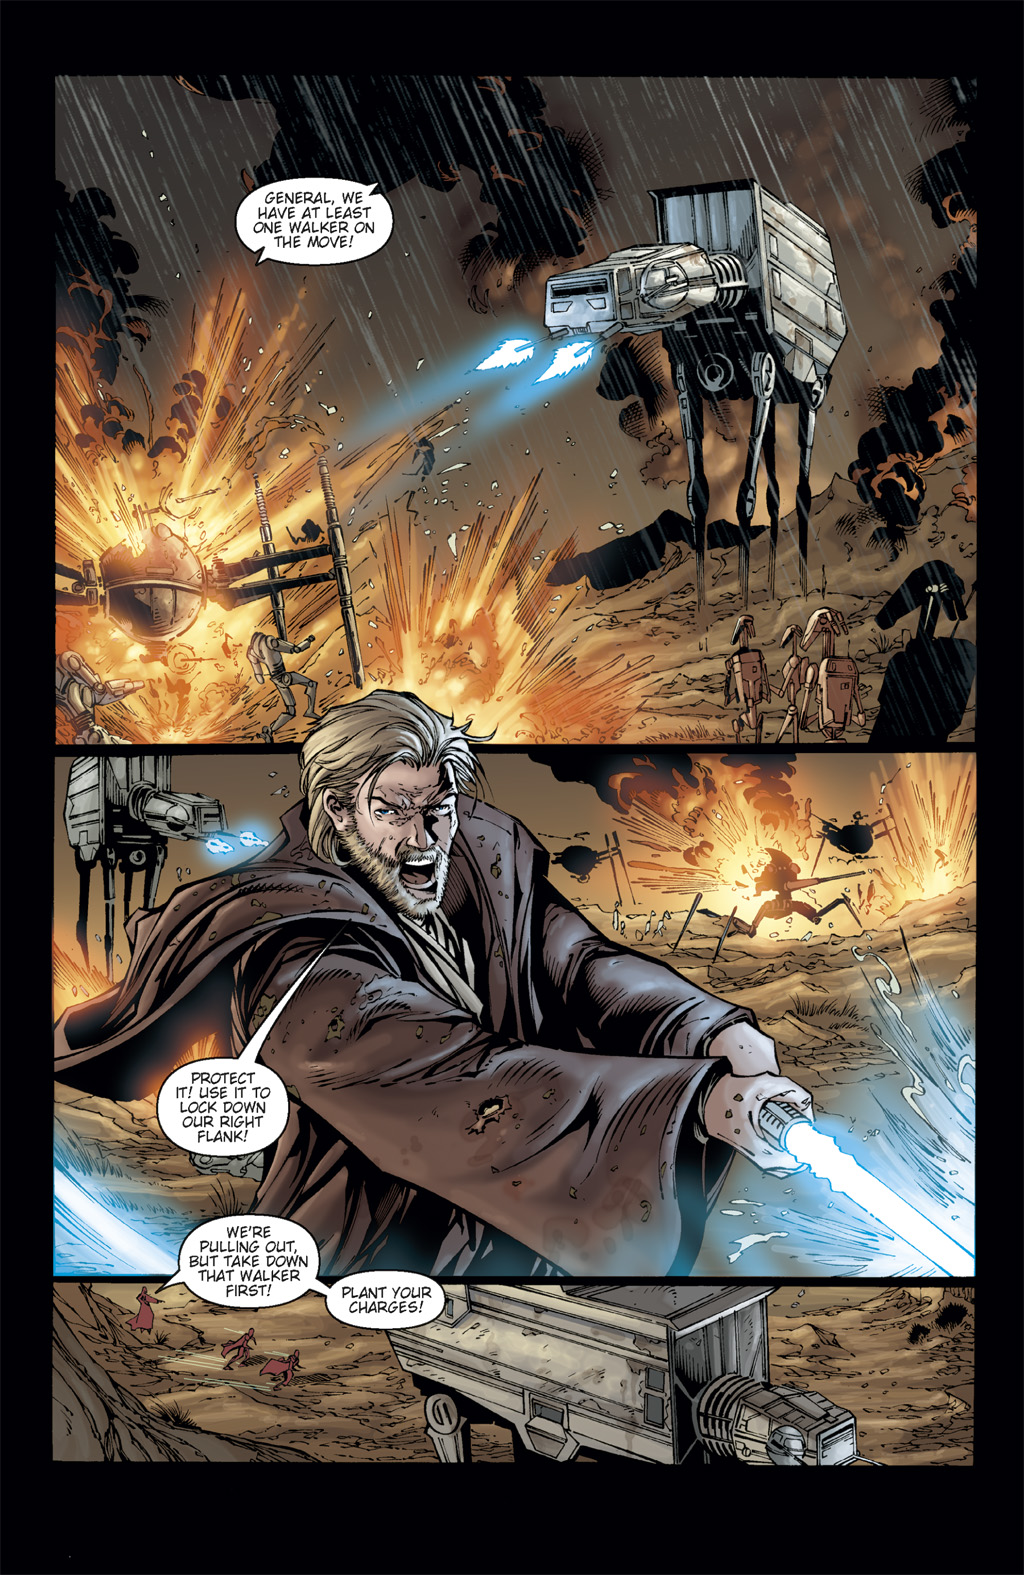 Read online Star Wars: Clone Wars comic -  Issue # TPB 3 - 24